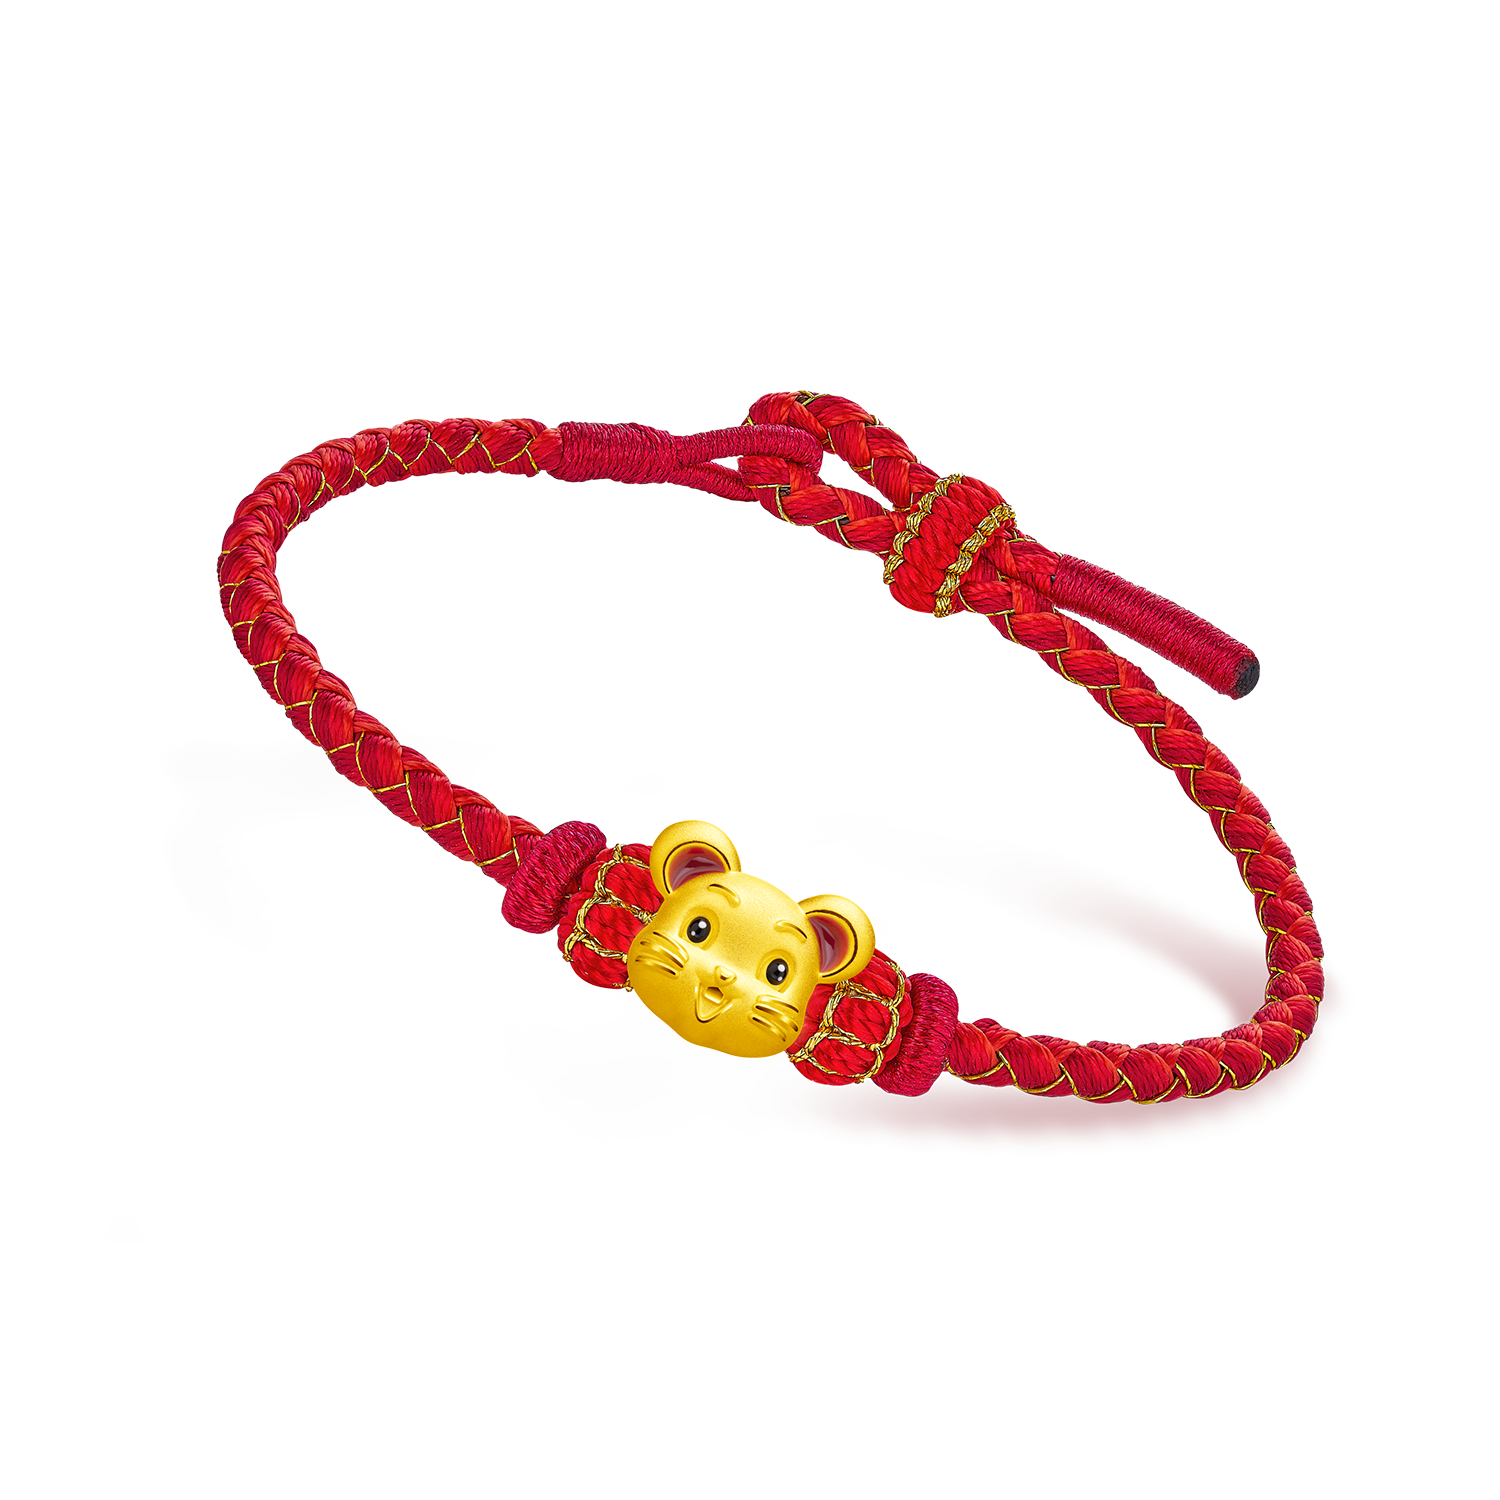 Paradise Chain Bracelet S00 - Accessories